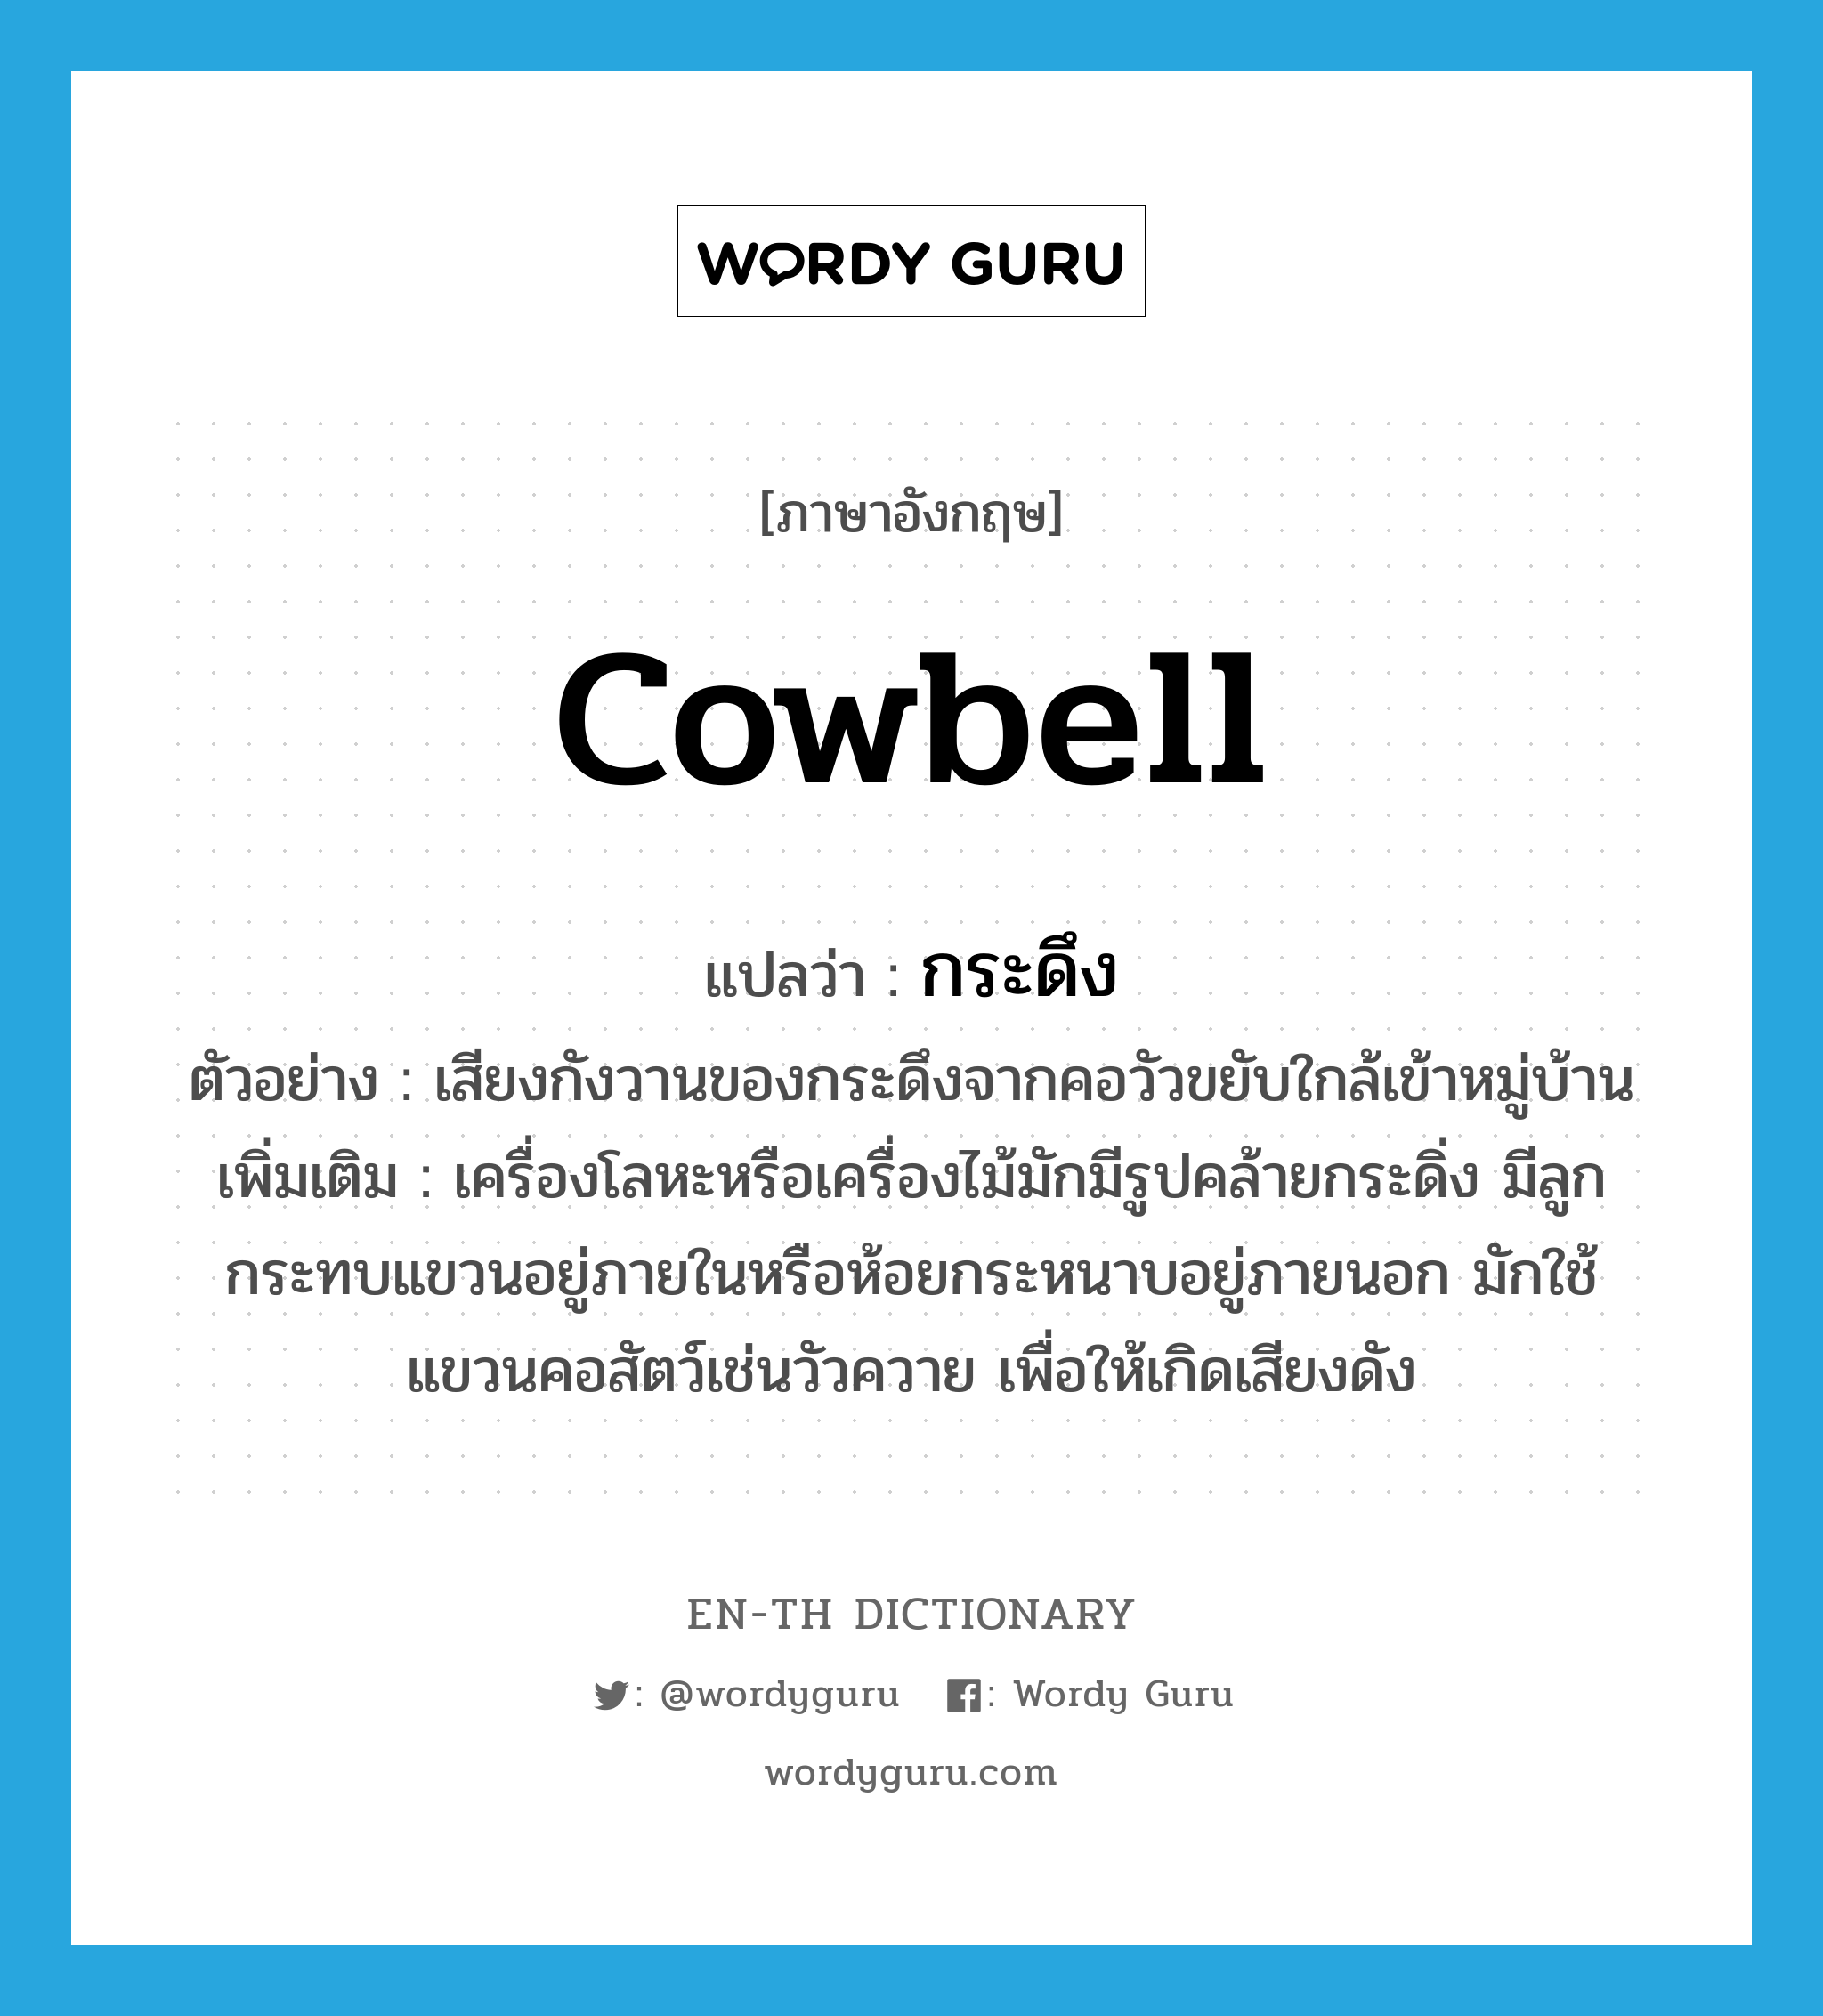 cowbell แปลว่า?, คำศัพท์ภาษาอังกฤษ cowbell แปลว่า กระดึง ประเภท N ตัวอย่าง เสียงกังวานของกระดึงจากคอวัวขยับใกล้เข้าหมู่บ้าน เพิ่มเติม เครื่องโลหะหรือเครื่องไม้มักมีรูปคล้ายกระดิ่ง มีลูกกระทบแขวนอยู่ภายในหรือห้อยกระหนาบอยู่ภายนอก มักใช้แขวนคอสัตว์เช่นวัวควาย เพื่อให้เกิดเสียงดัง หมวด N